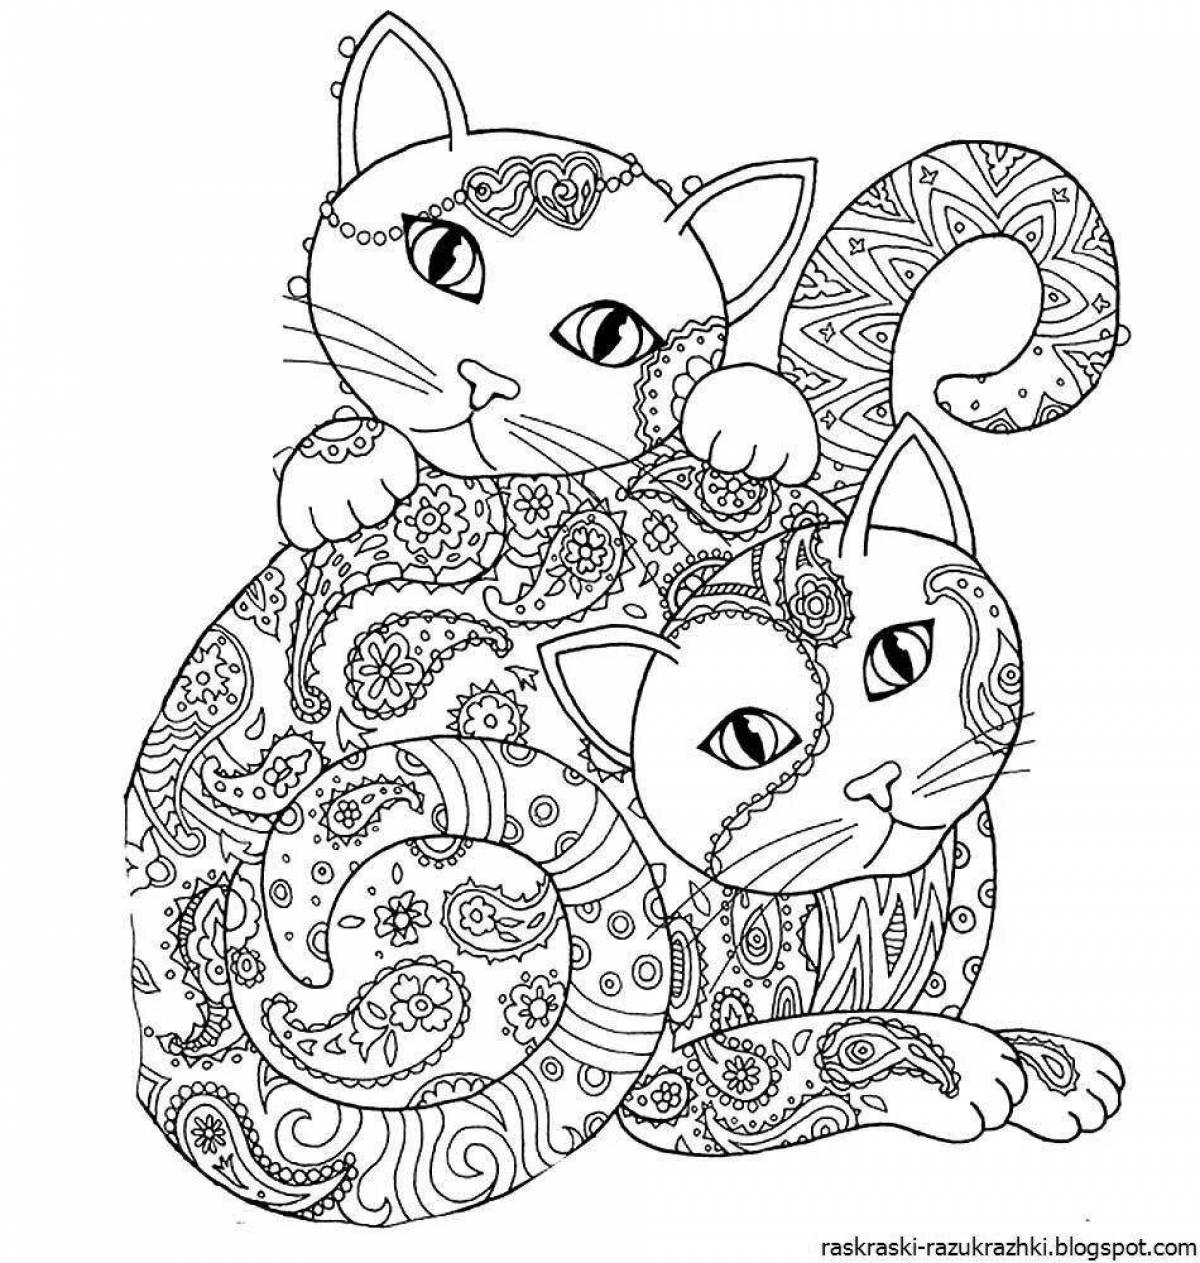 Радостная раскраска для девочек 12 лет, милые коты